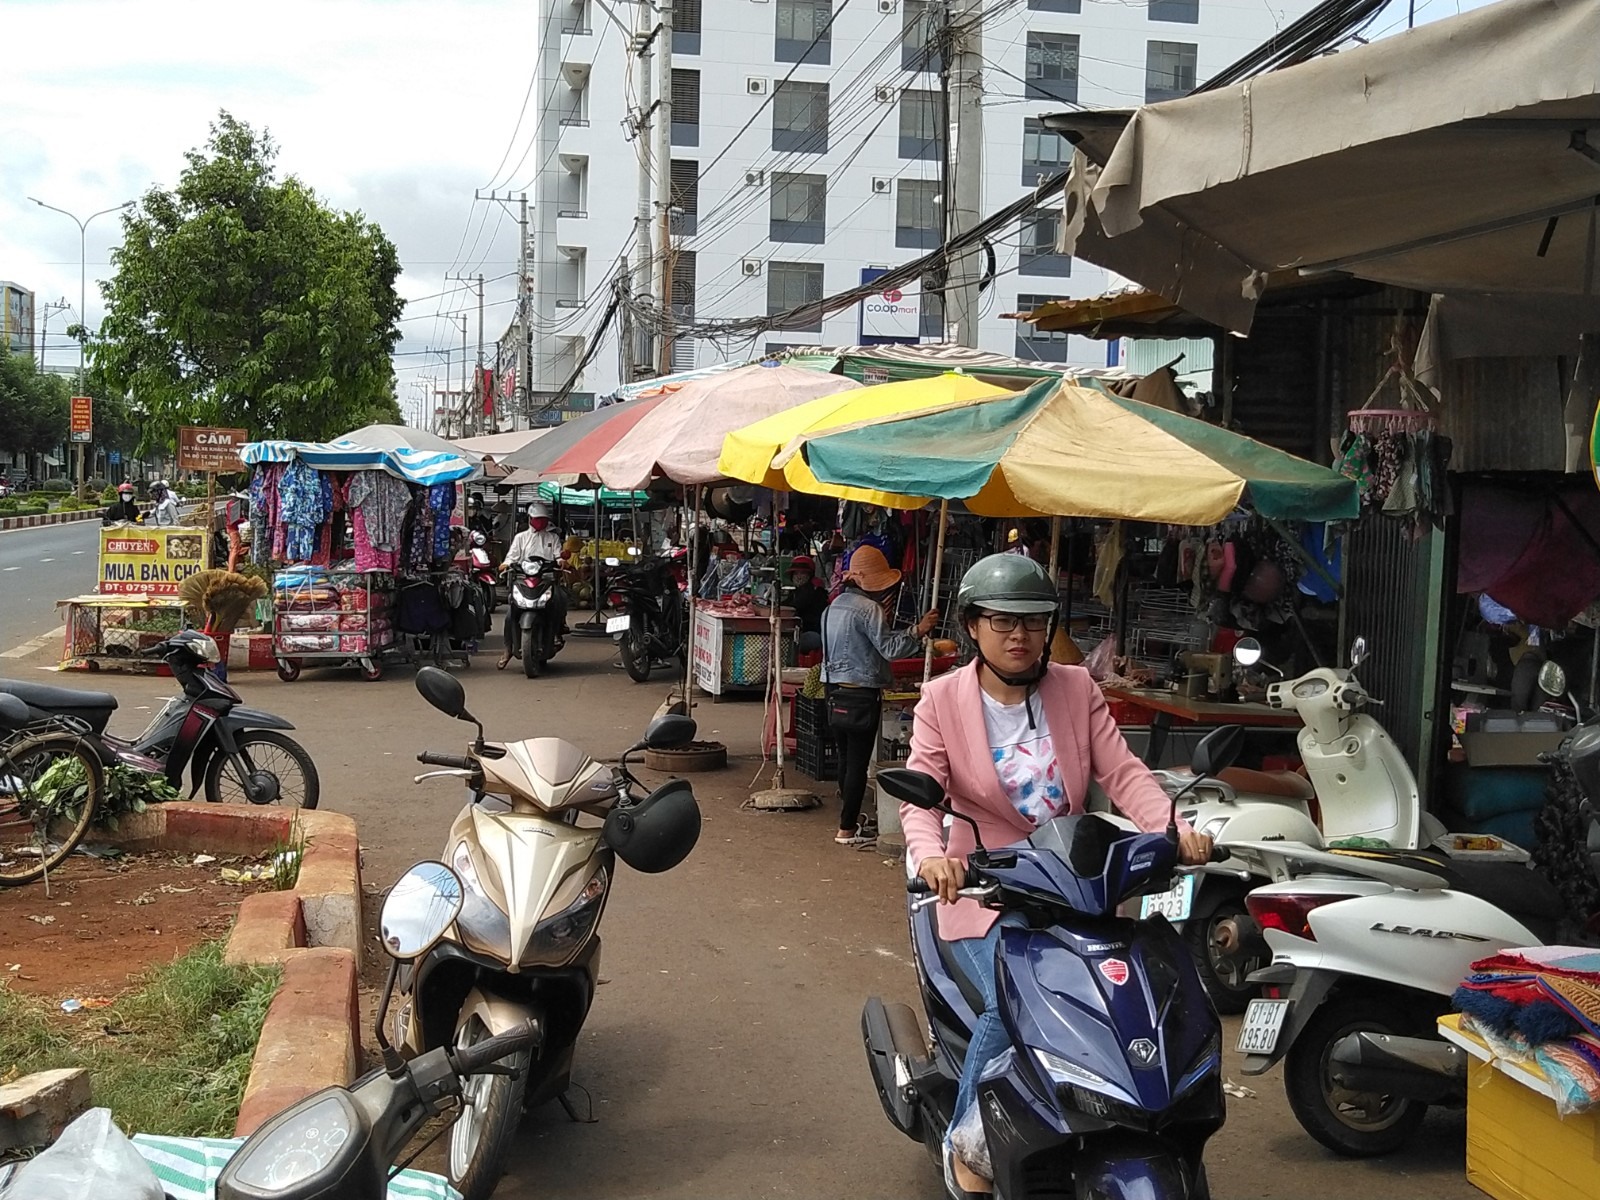 Vụ tai nạn do xe khách mất lái đâm vào chợ làm 4 người chết vẫn khiến người dân huyện Chư Sê ám ảnh